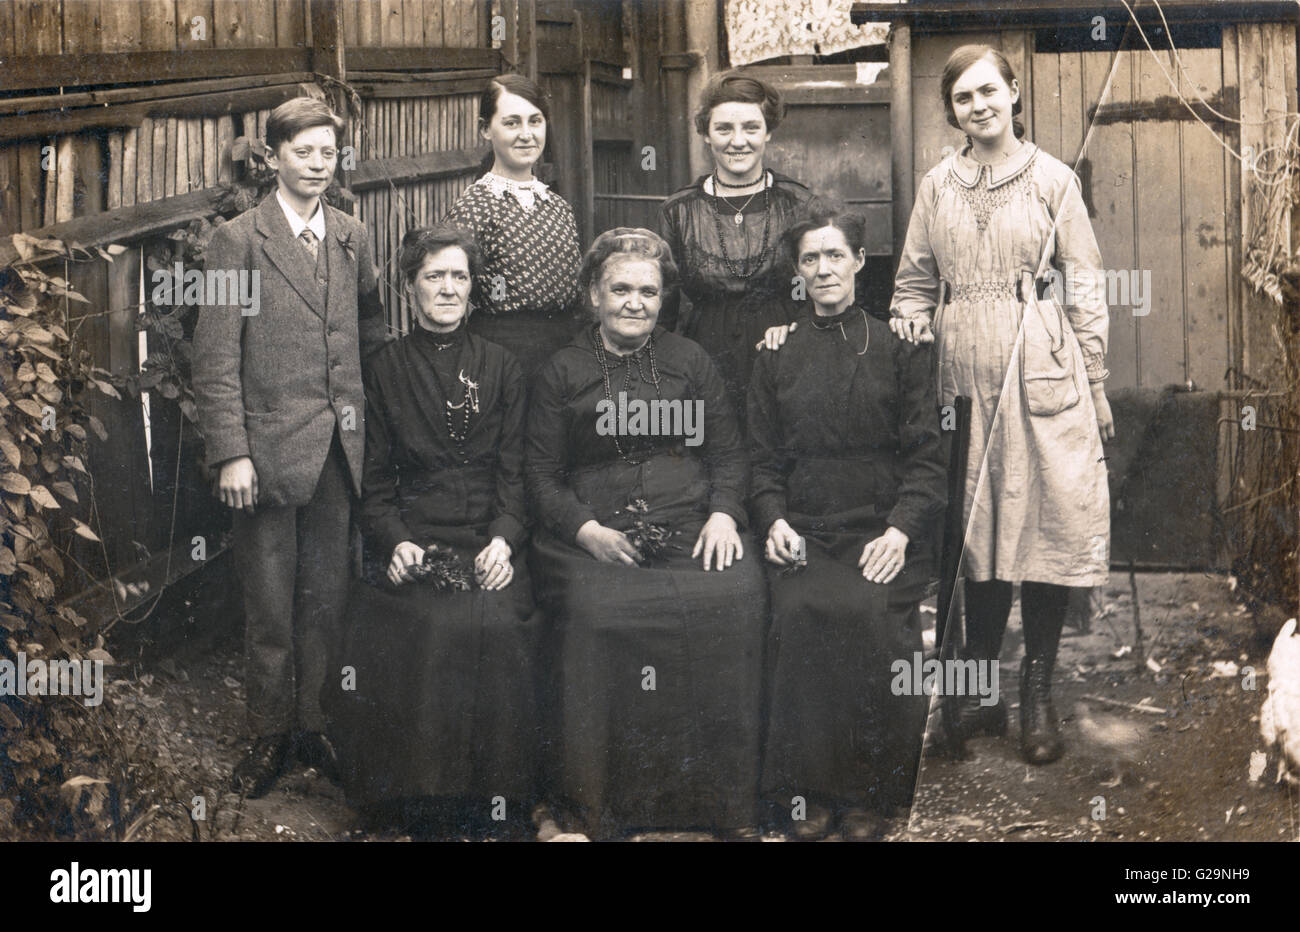 Inglaterra, 1909. Retrato de Grupo en blanco y negro en el funeral de varios miembros de una familia de jóvenes a viejos. La placa fotográfica de cristal con crack de arriba a abajo. Foto de stock